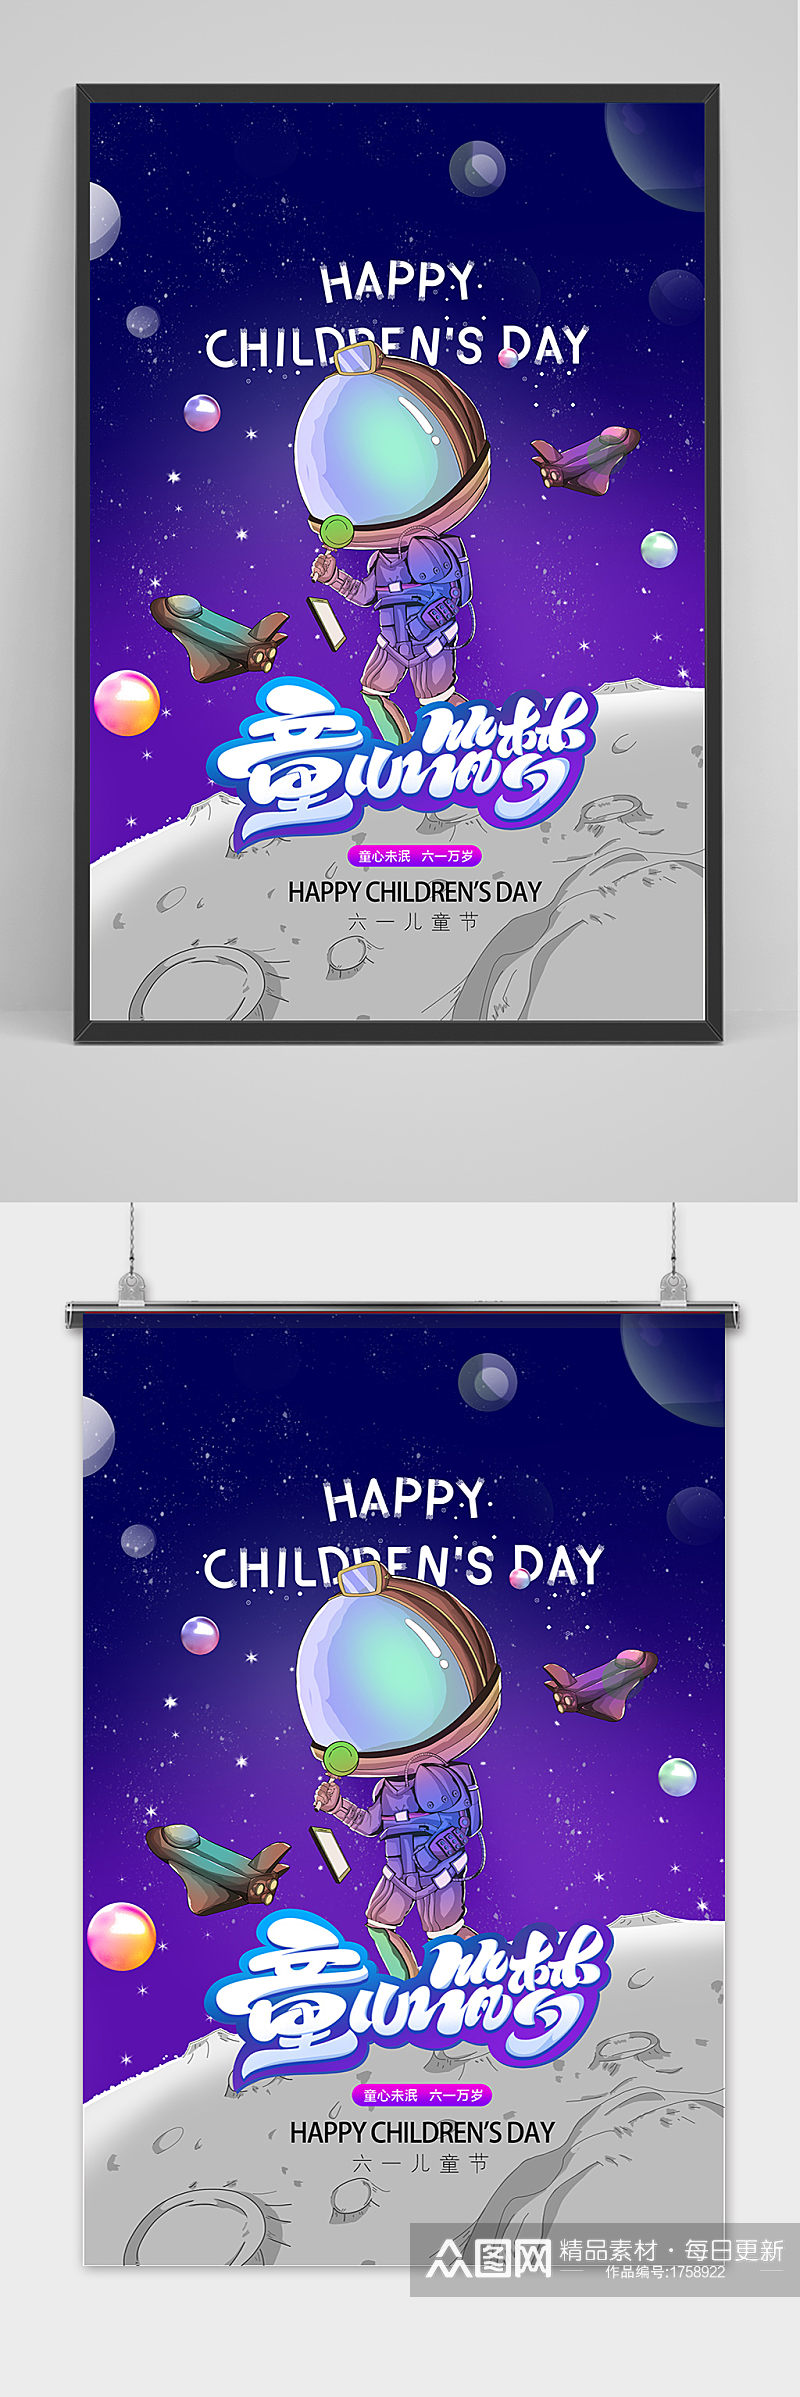 手绘紫色卡通六一儿童节海报素材